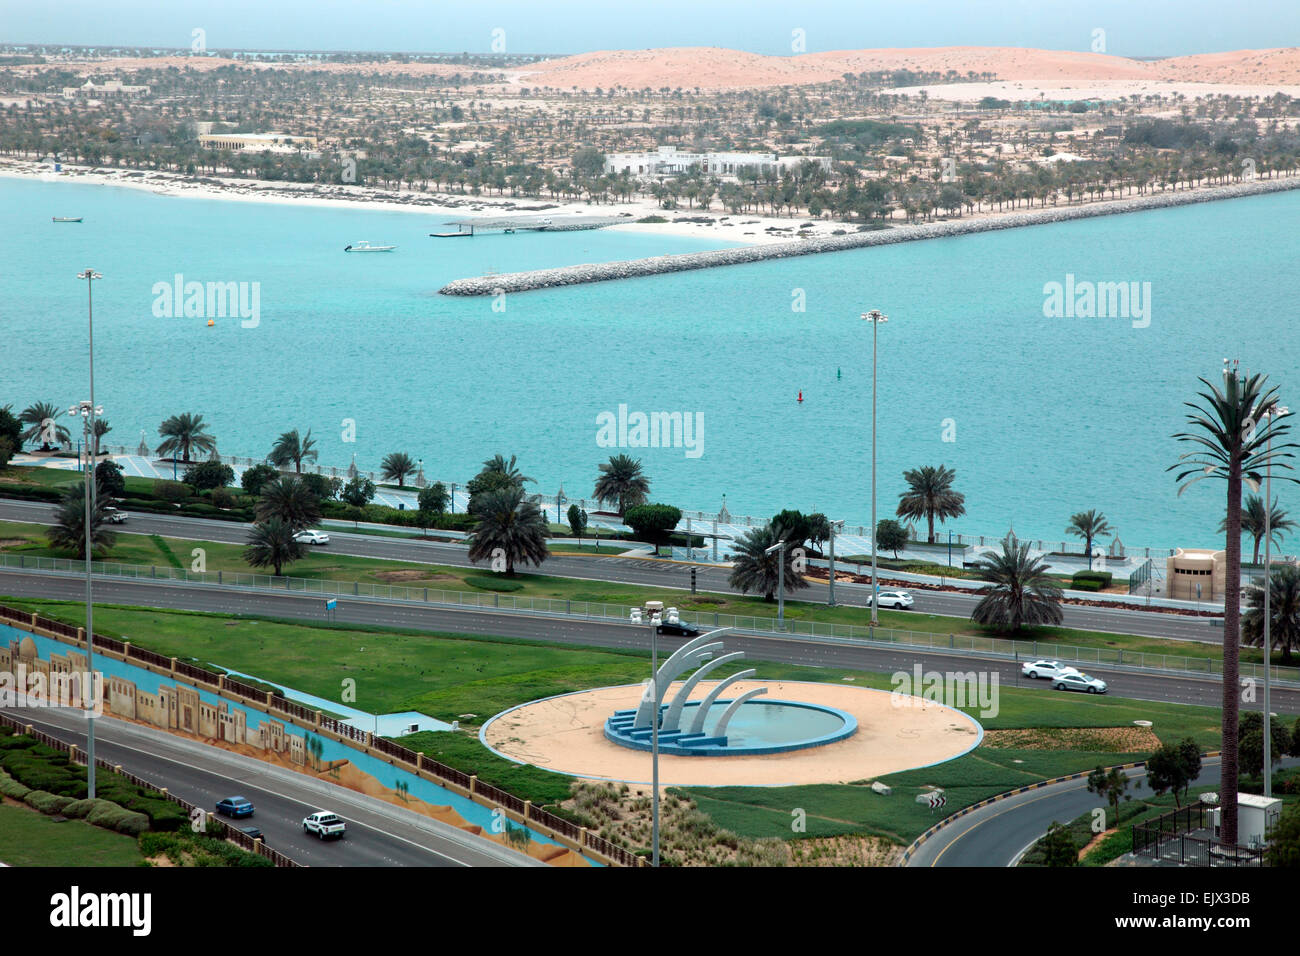 La Corniche, el paseo marítimo que bordea el golfo Arábigo, Abu Dhabi. Foto de stock